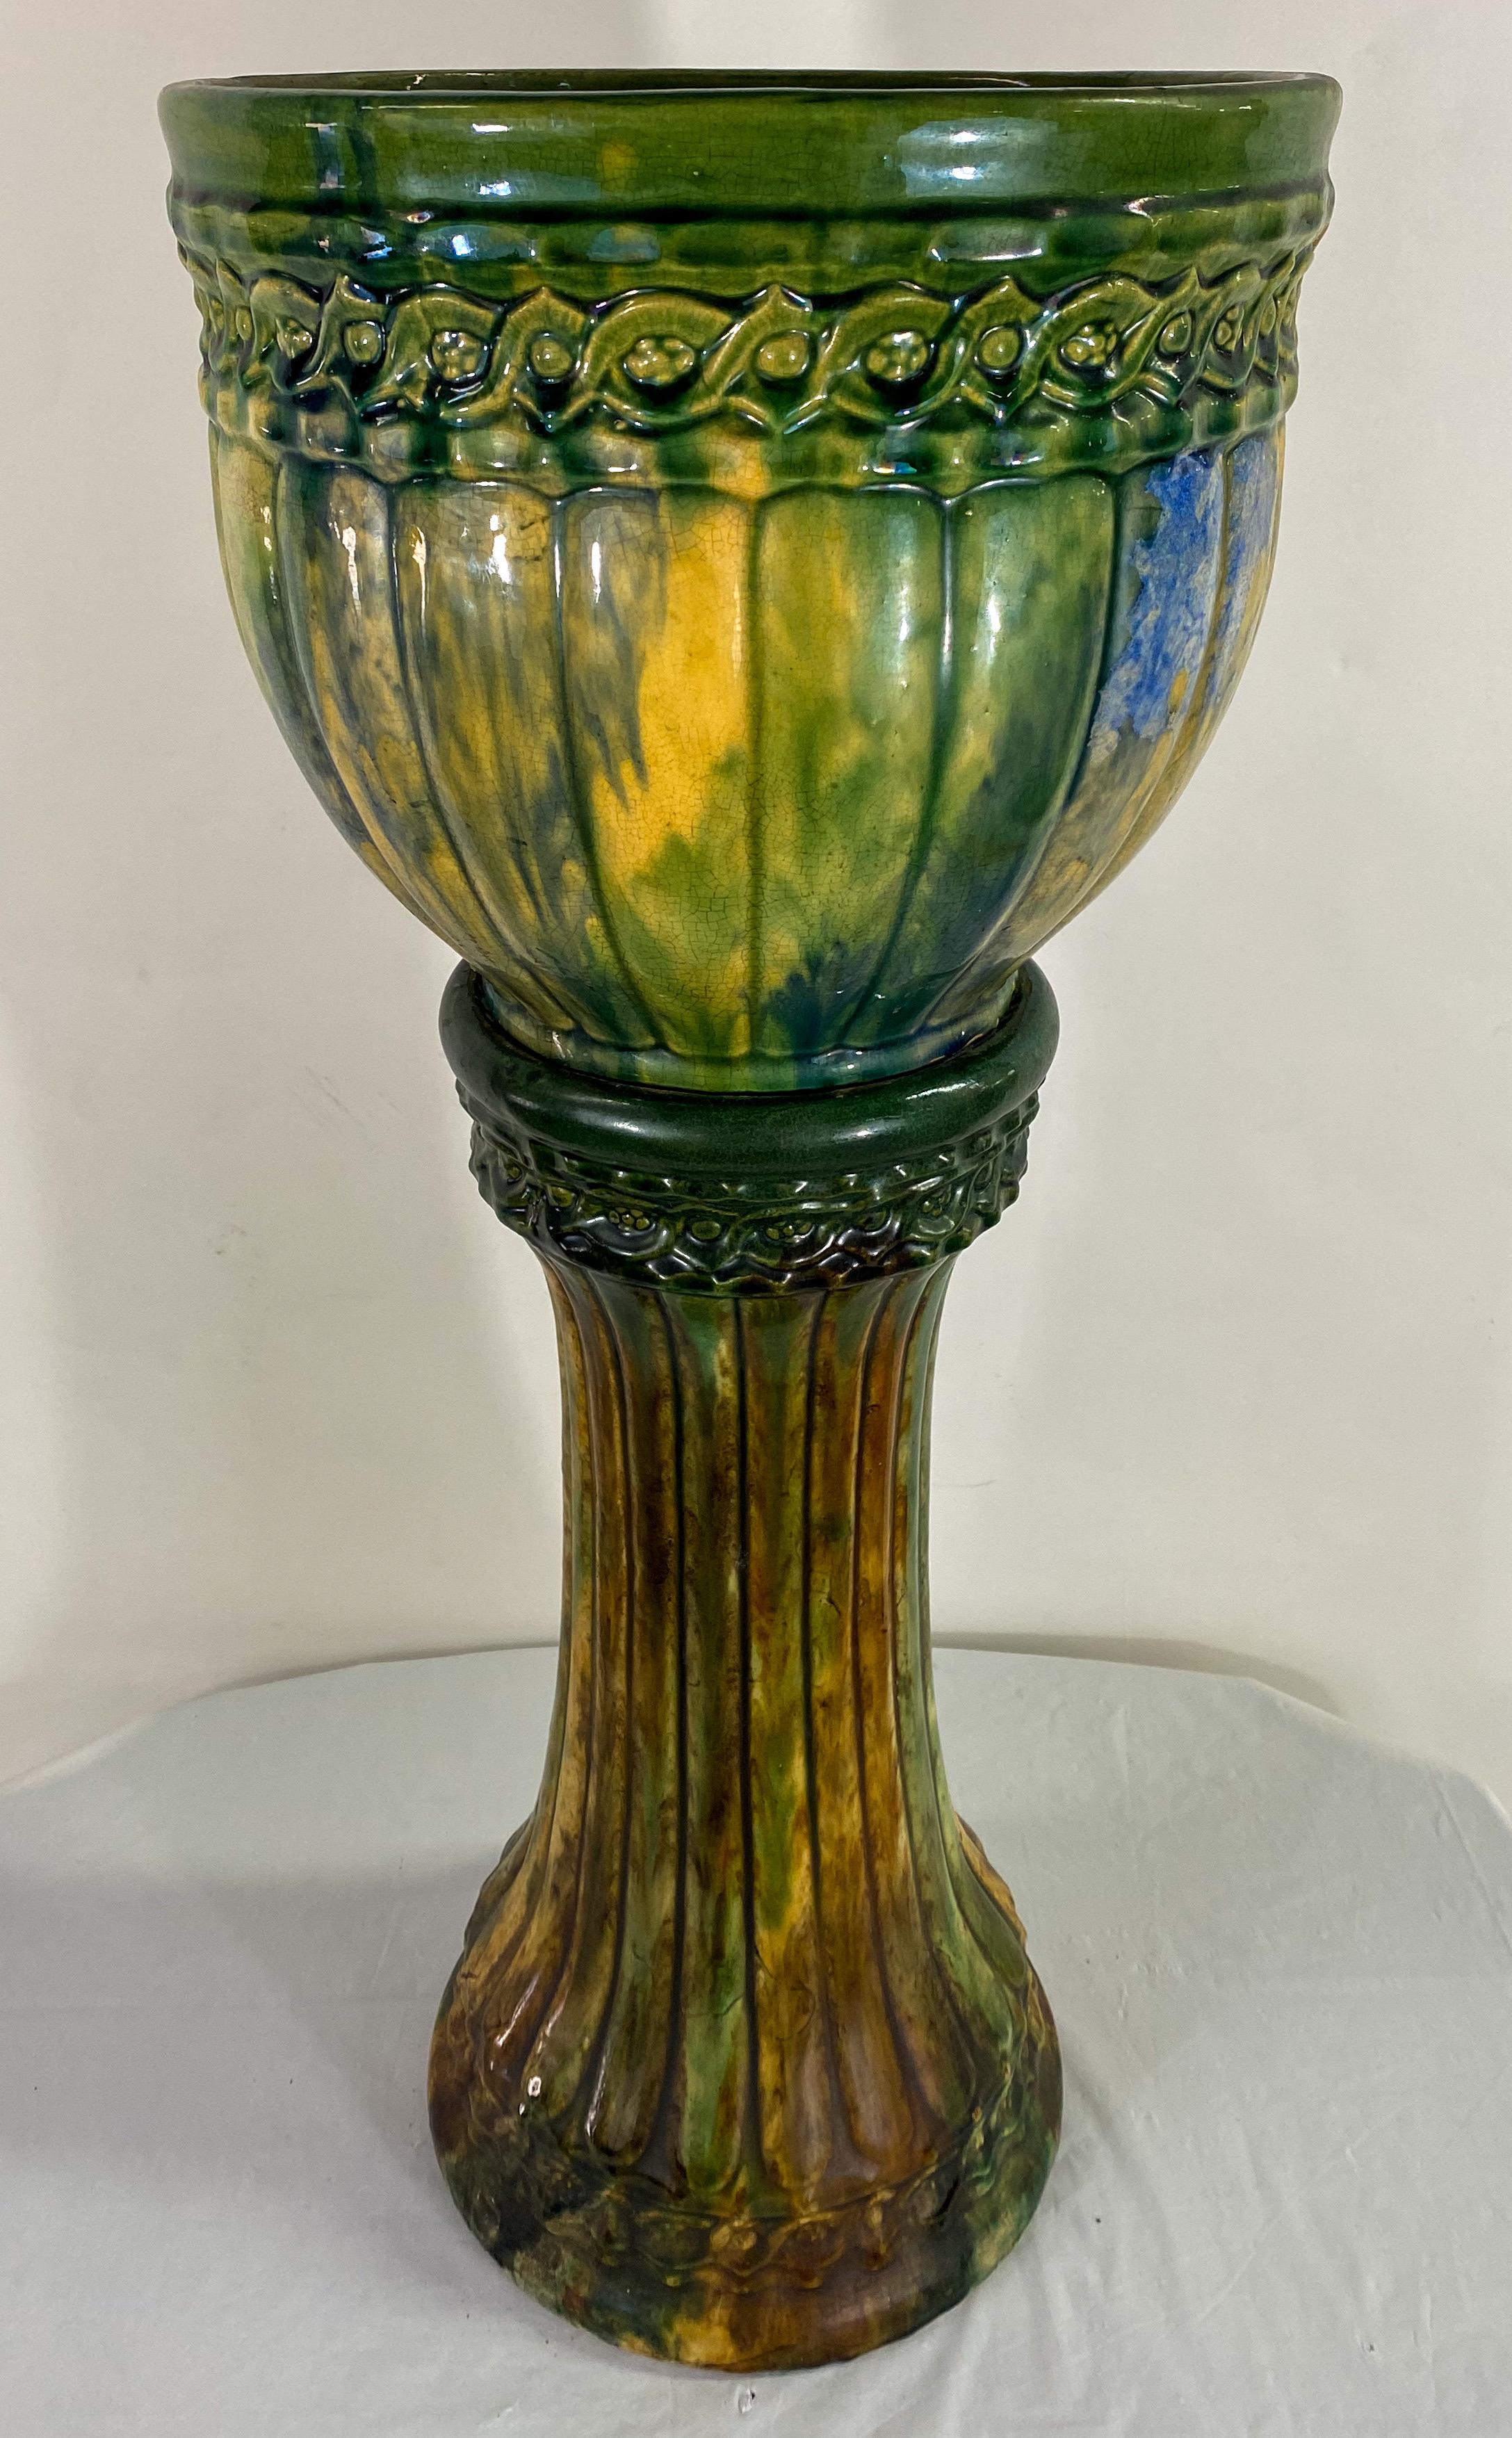 Eine schöne Jugendstil-Keramik Majolika Pflanzgefäß oder Jardiniere. Das Pflanzgefäß steht auf einem schönen Sockel mit einem exquisiten gerippten Kürbisdesign und einer leuchtend grünen Farbe mit gelben Schattierungen. 
Die zweiteilige Jardiniere